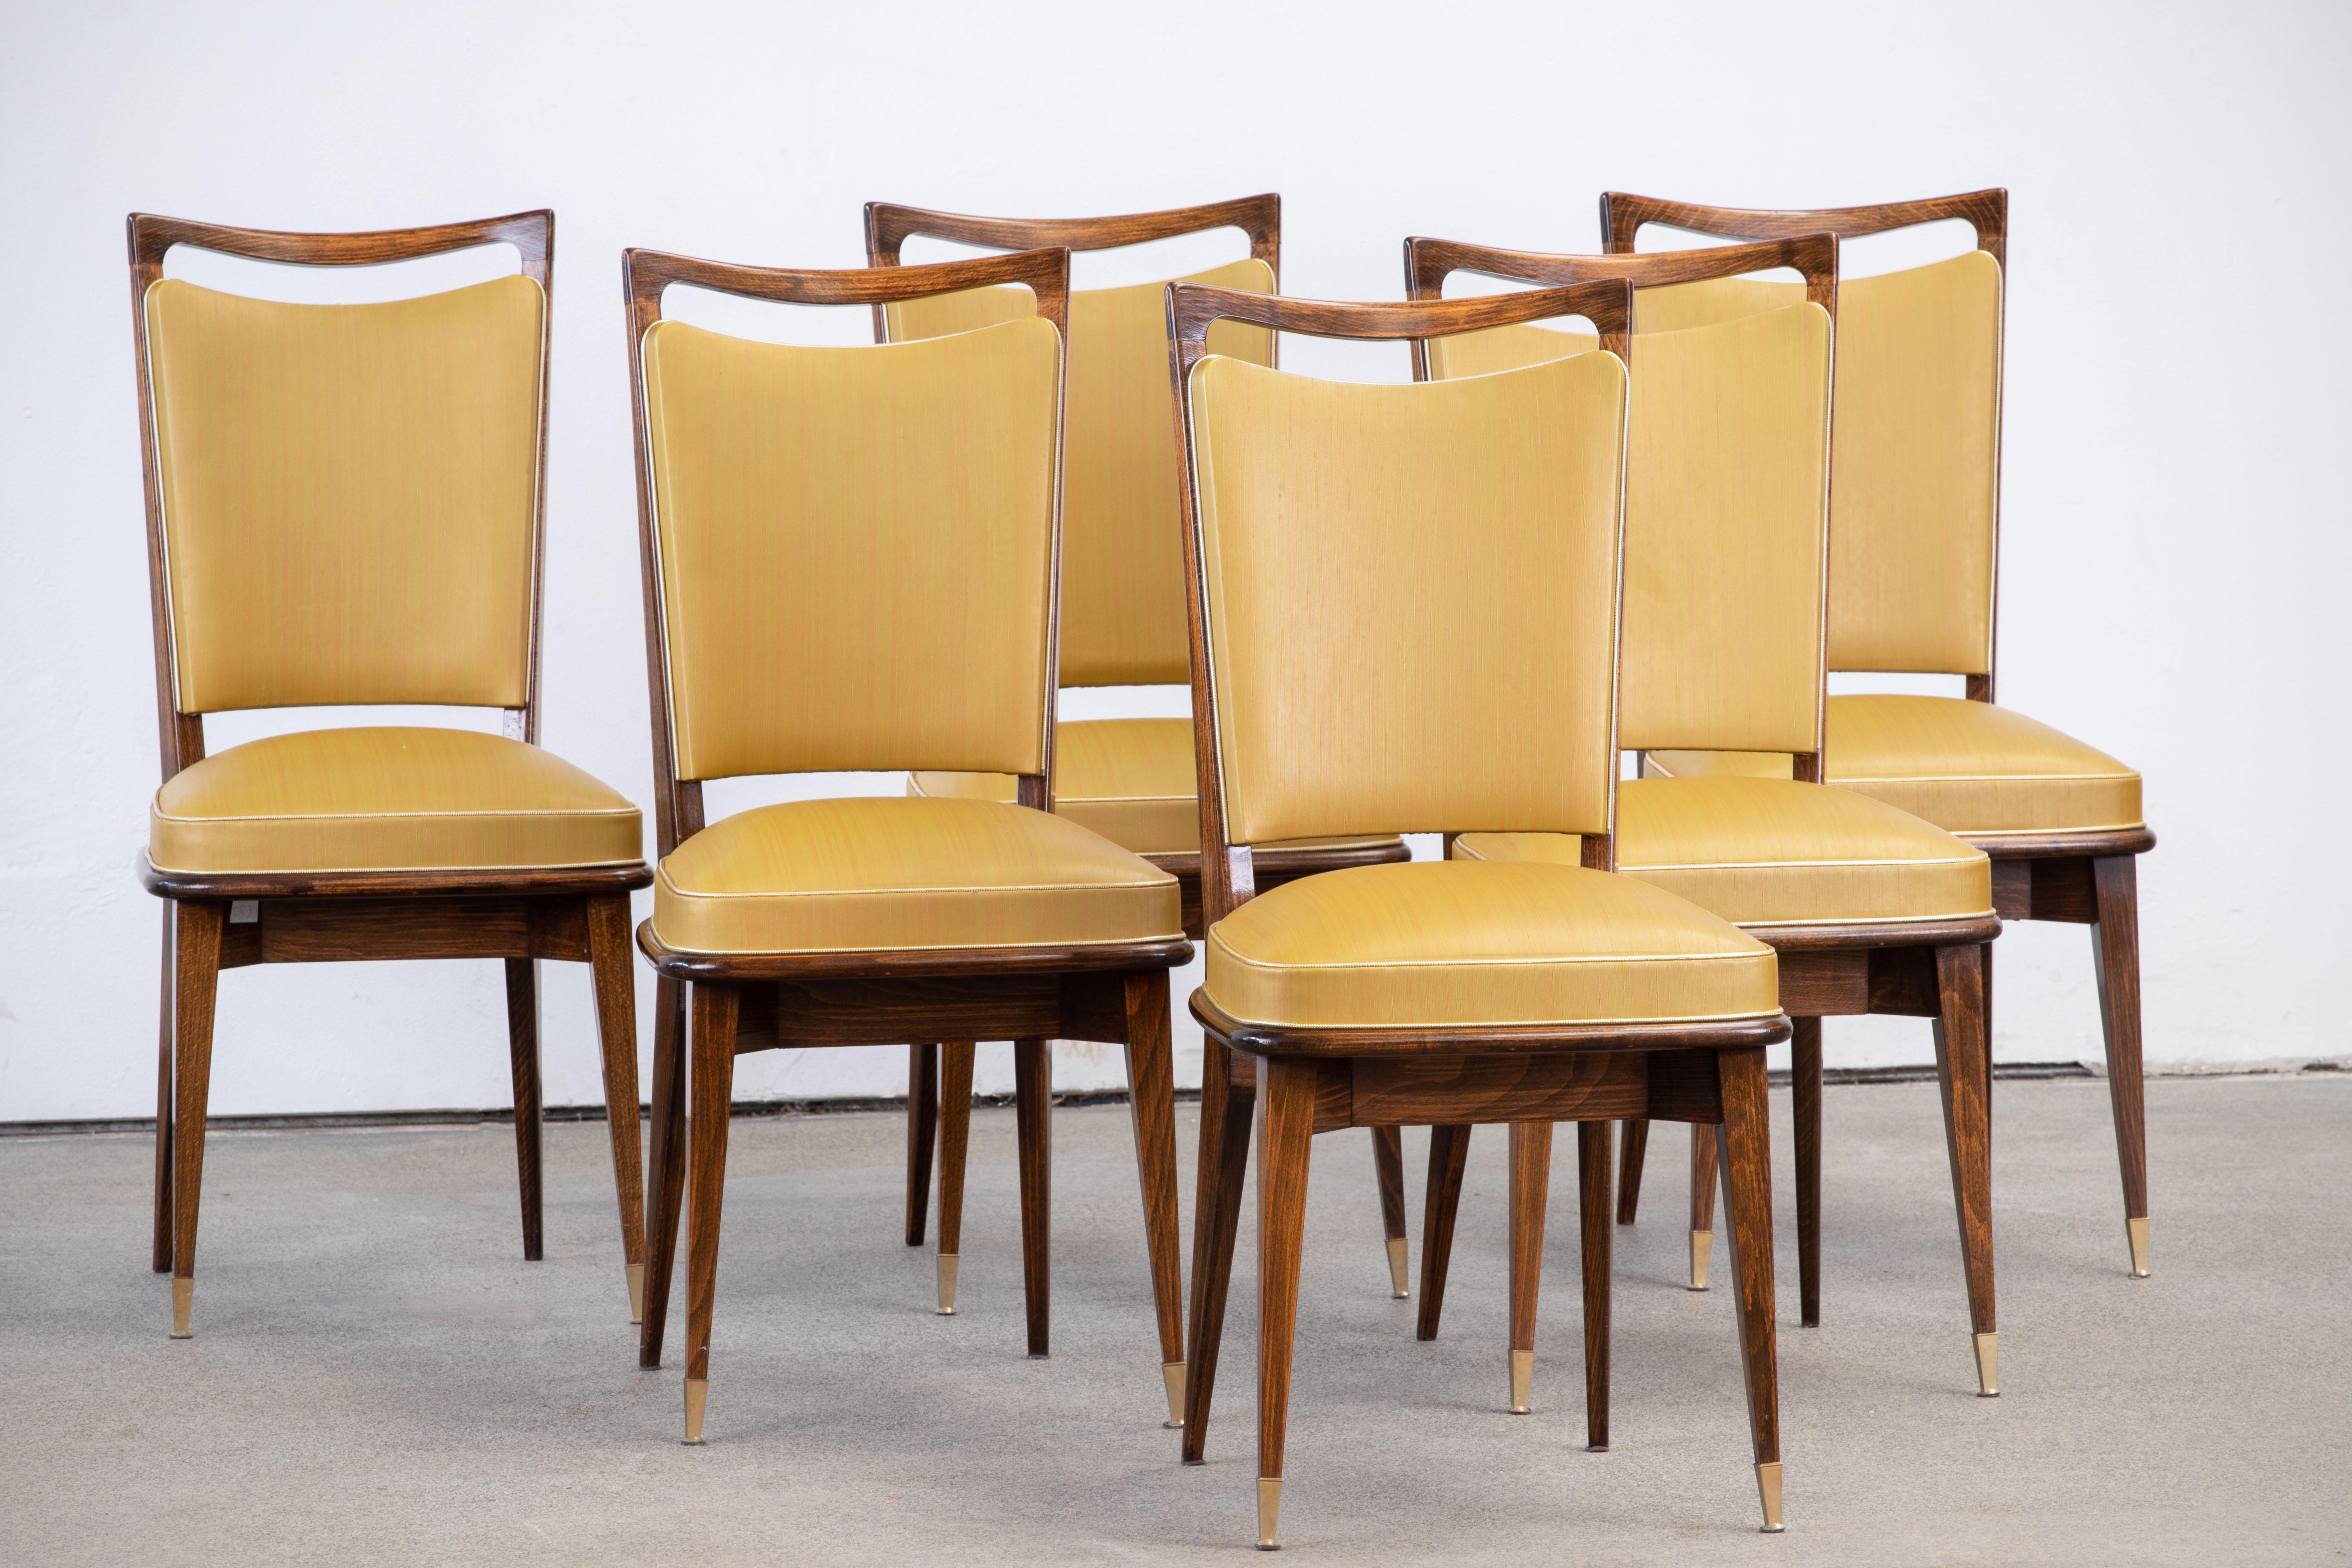 Set di sei sedie con schienale alto e imbottito, rivestite in vynil giallo, che presentano elementi di design tradizionale francese con una finitura in rovere profondo.

Nello stile di René Prou, Albert Guenot, Pomone, André Arbus, Baptistin